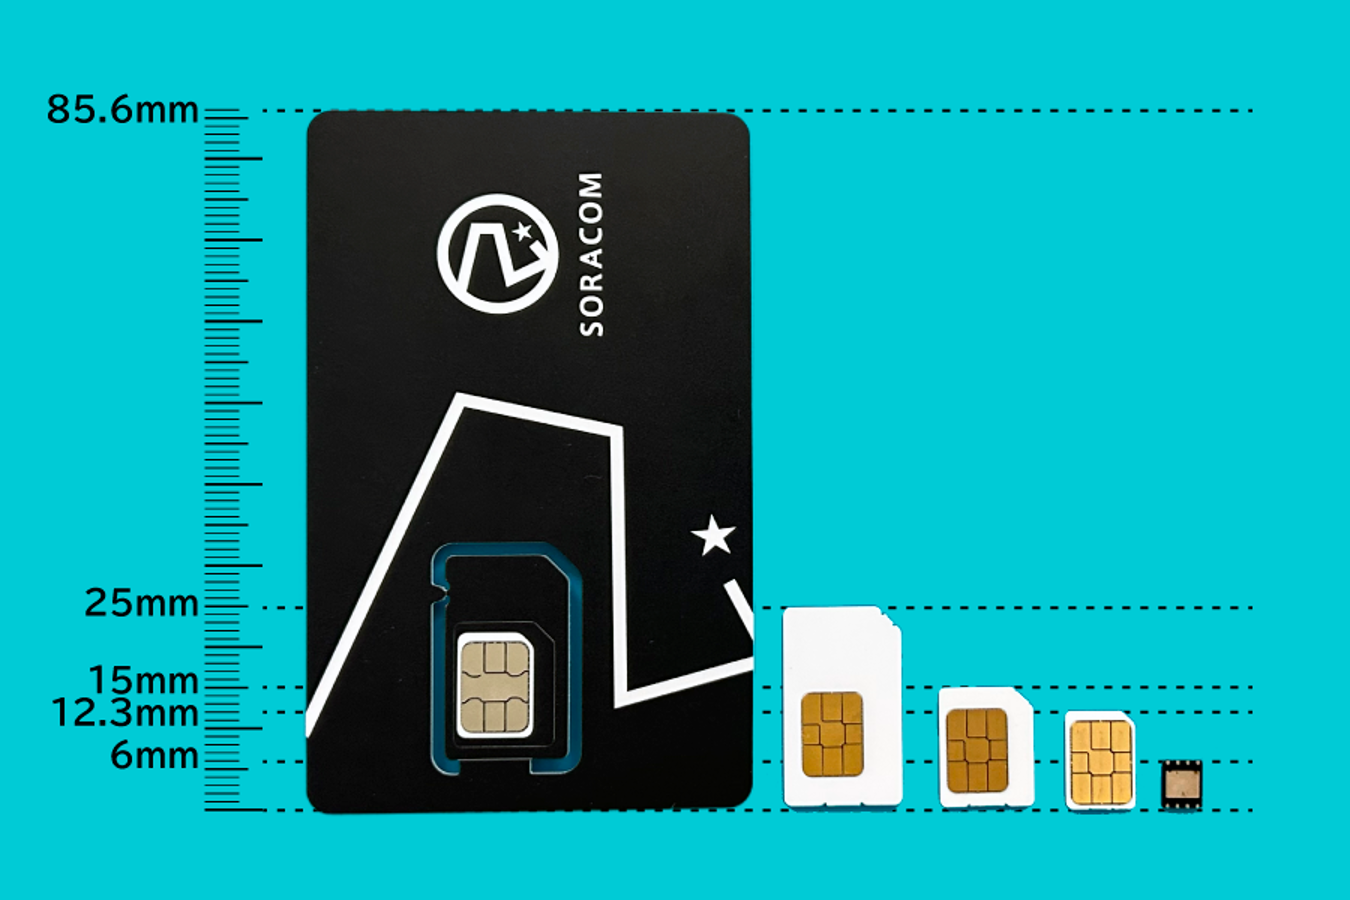 カード型SIM(左)とチップ型SIM(右)